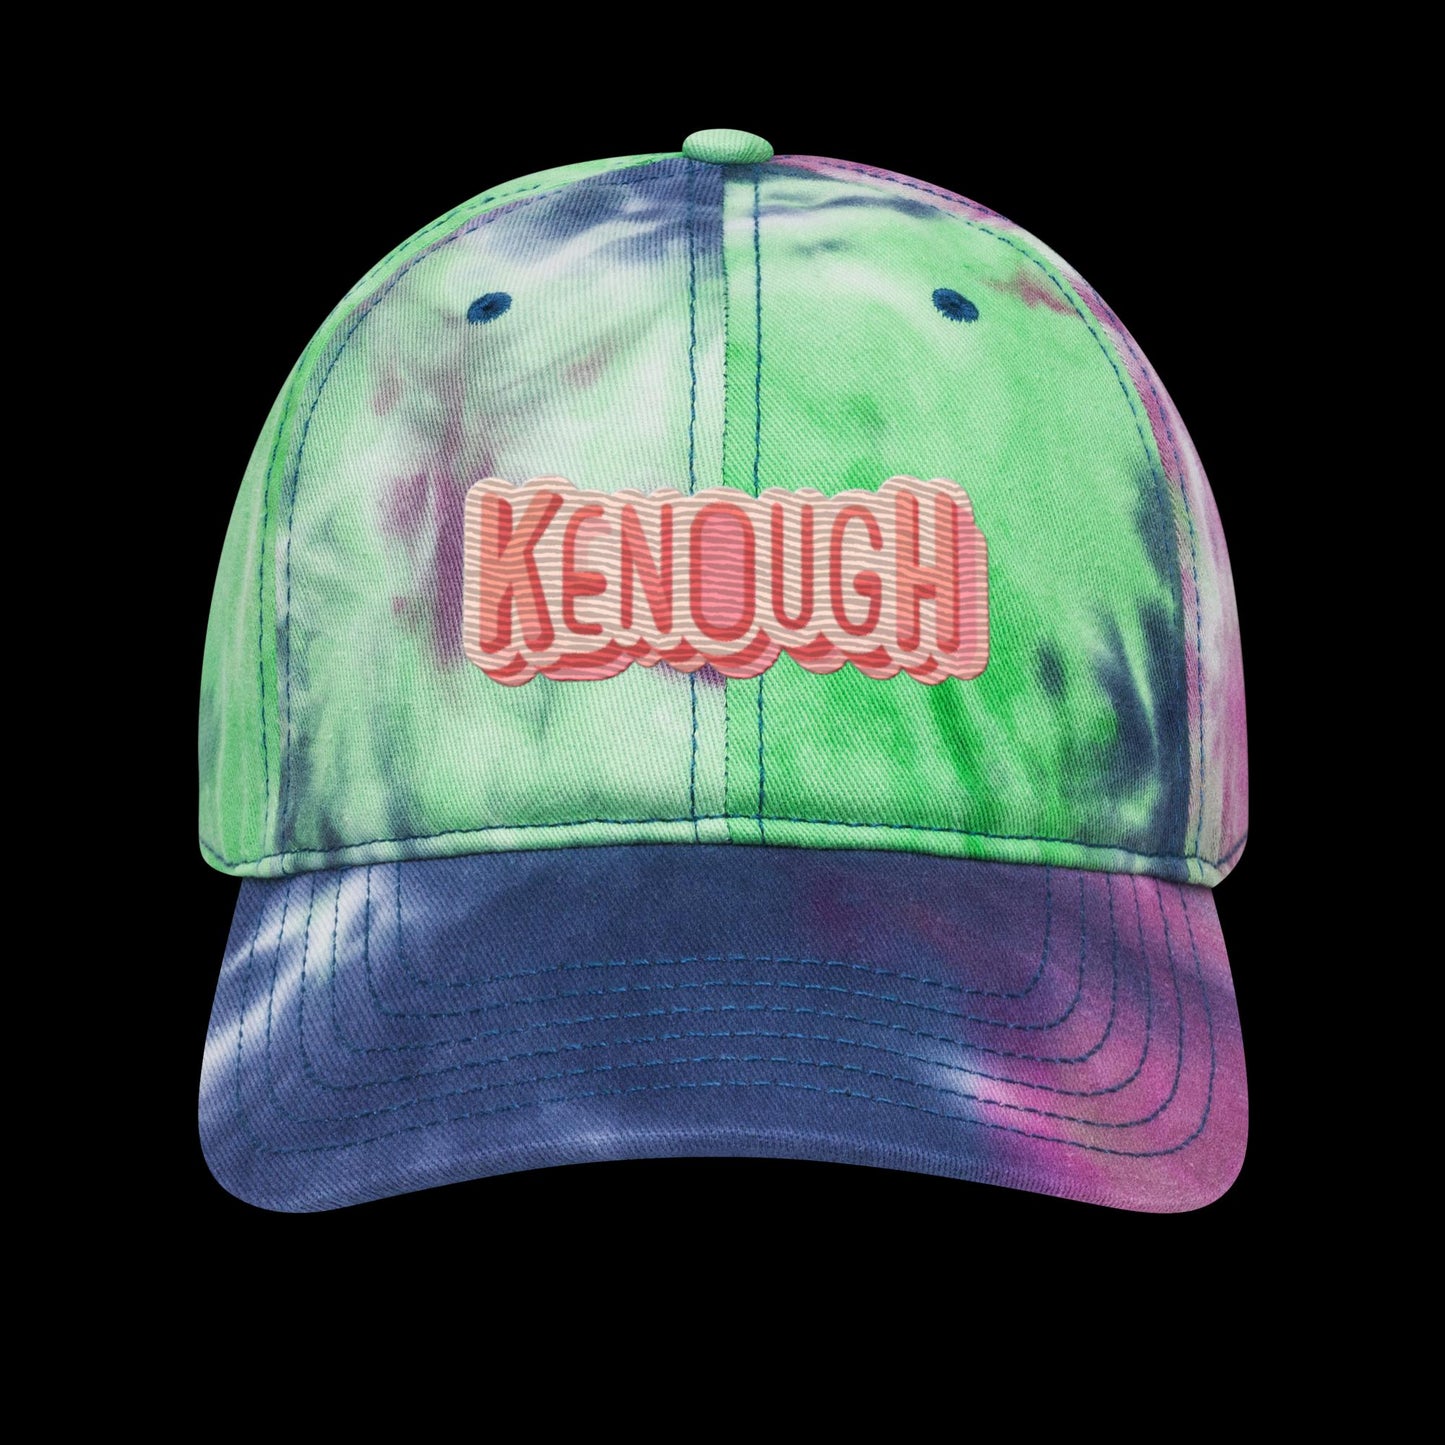 Kenough Tie dye hat